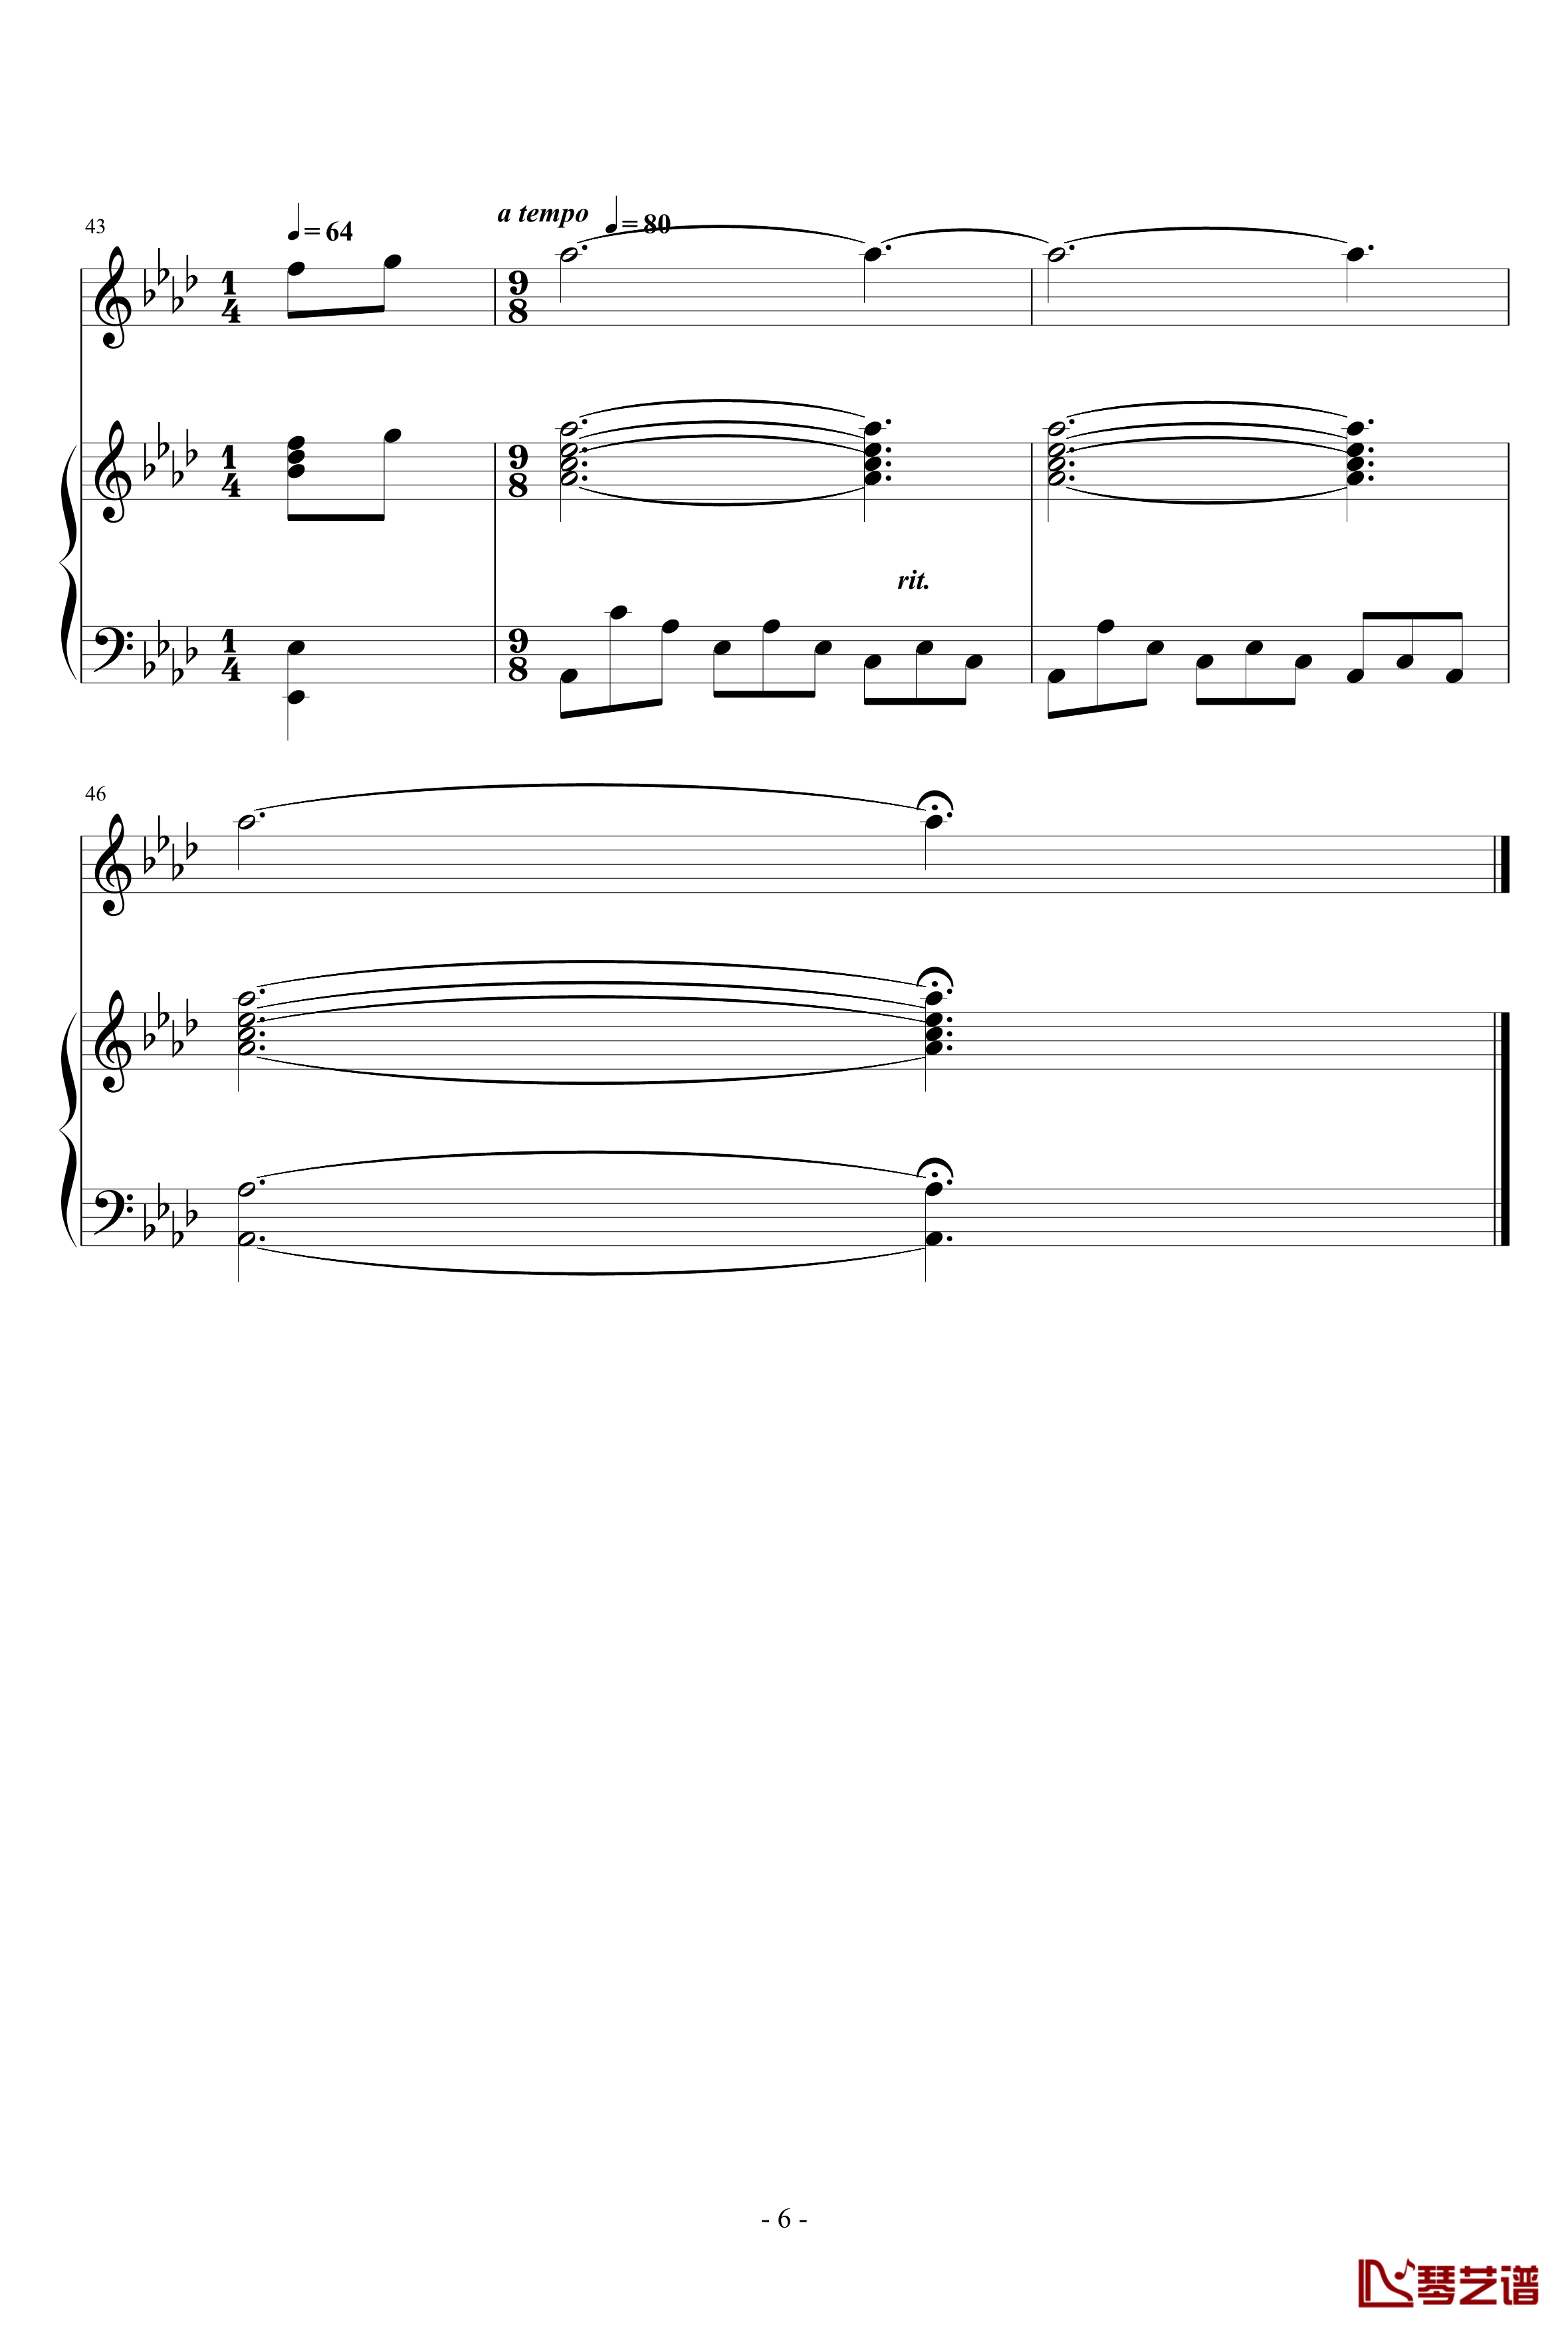 Art Song for winter钢琴谱-nzh19346